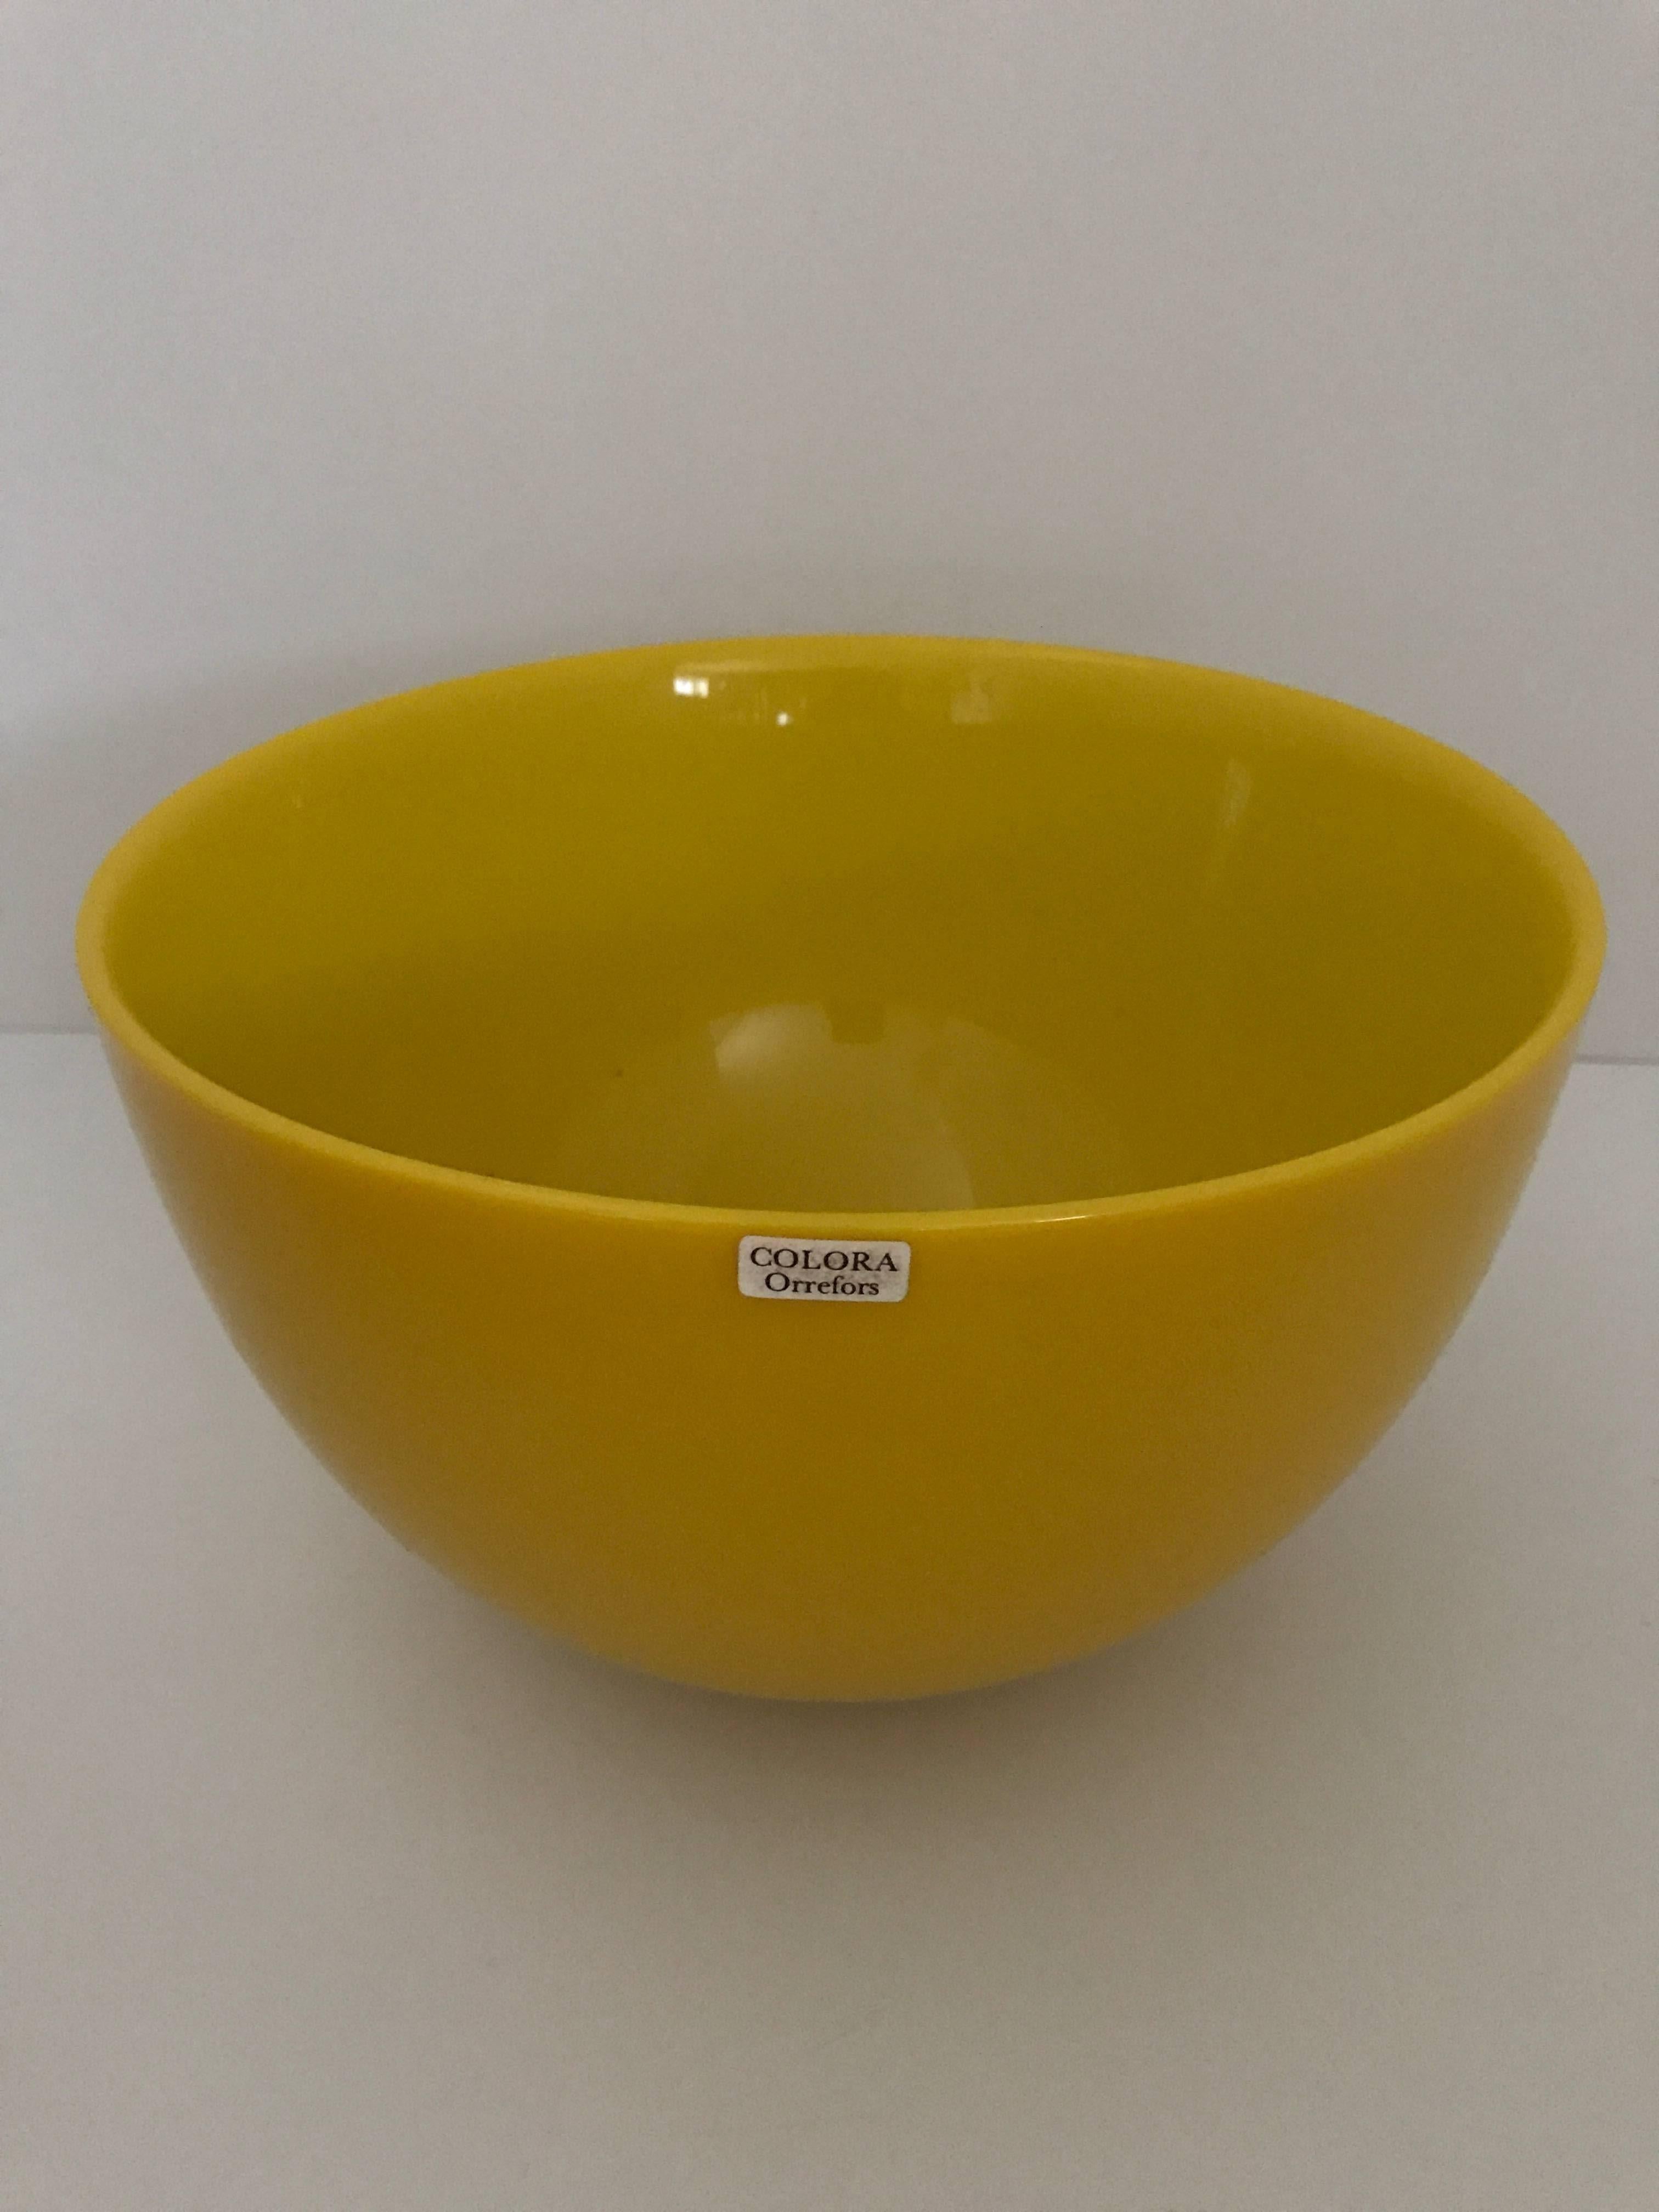 Mid-20th Century Swedish Orrefors Colora Bowls Four Pieces Set Sven Palmqvist For Sale 1